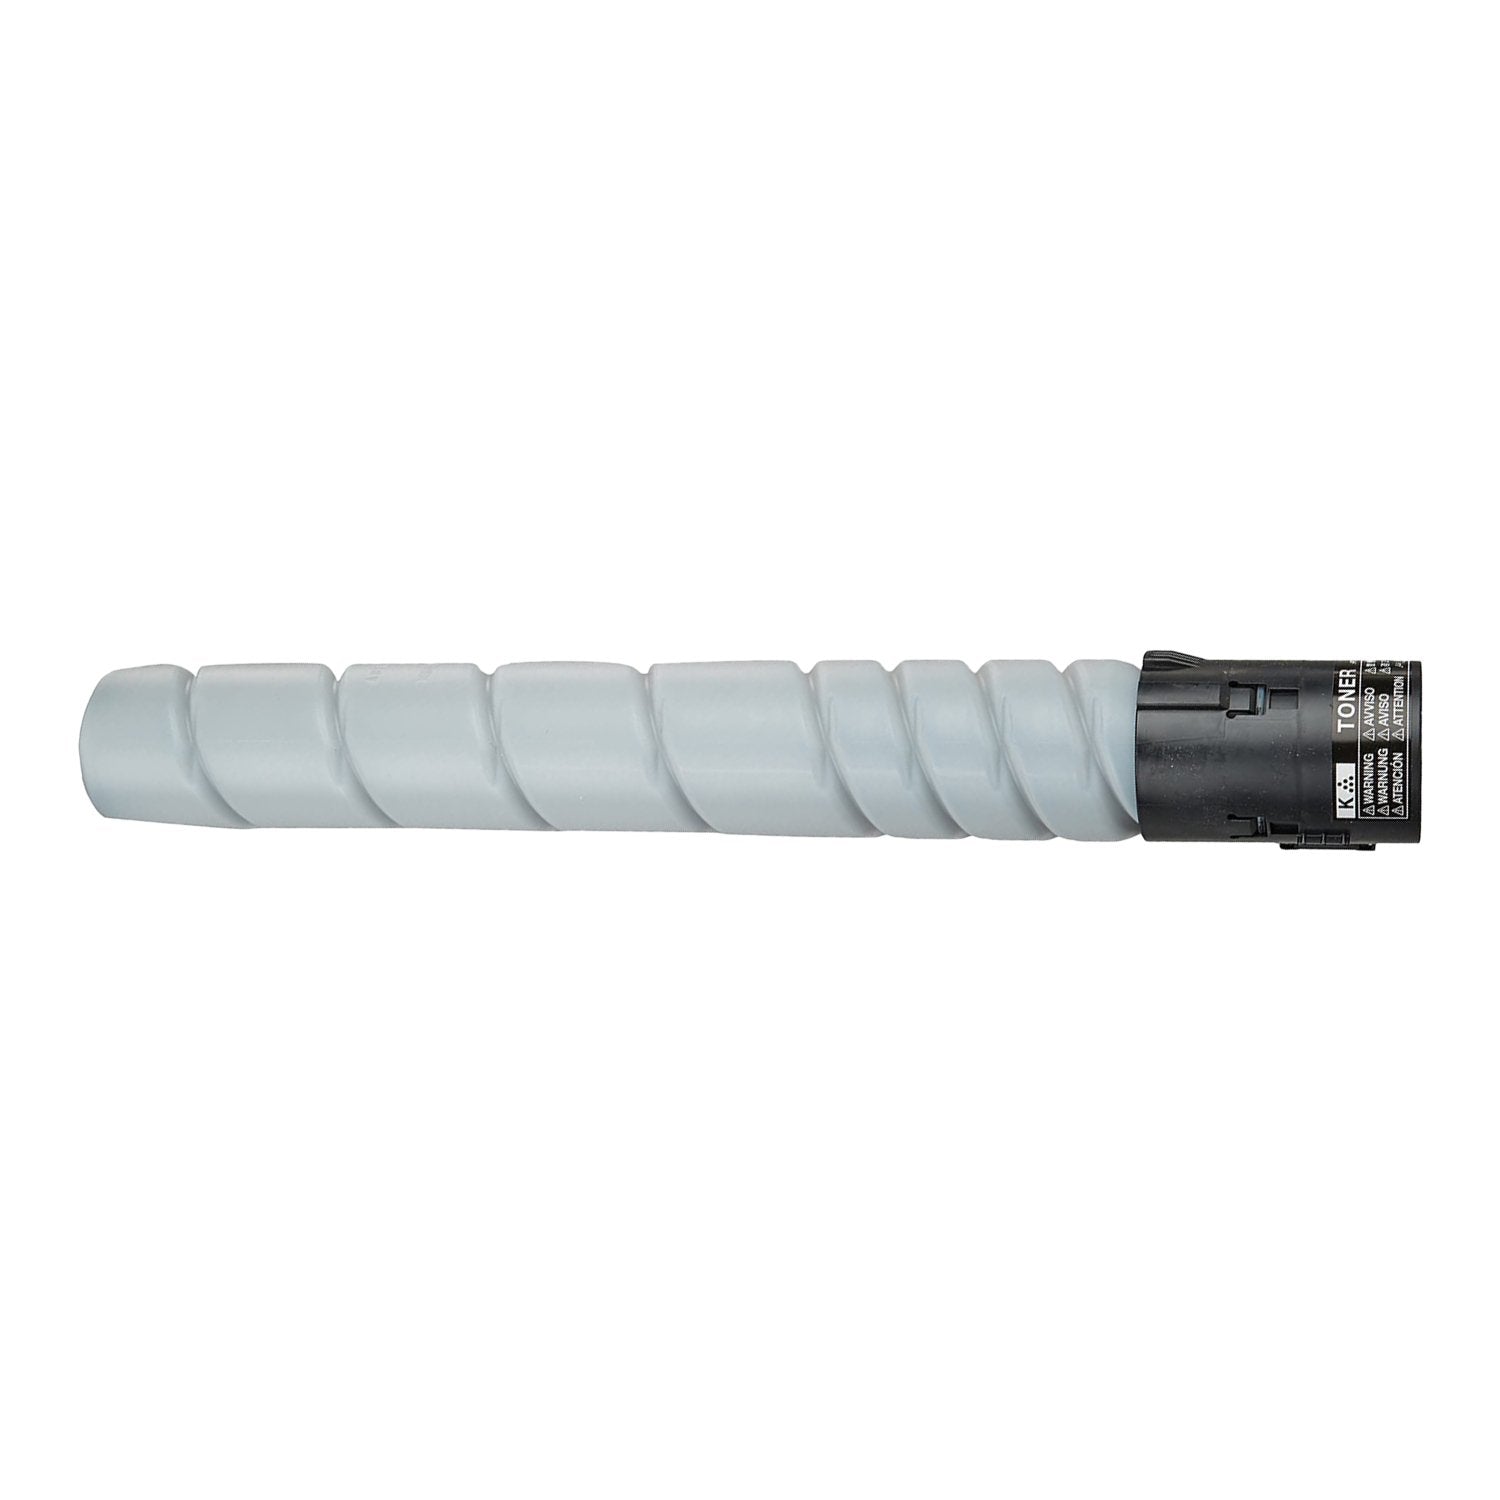 Absolute Toner Compatible Konica Minolta (2400B) Black Toner Cartridge | Absolute Toner Minolta Toner Cartridges